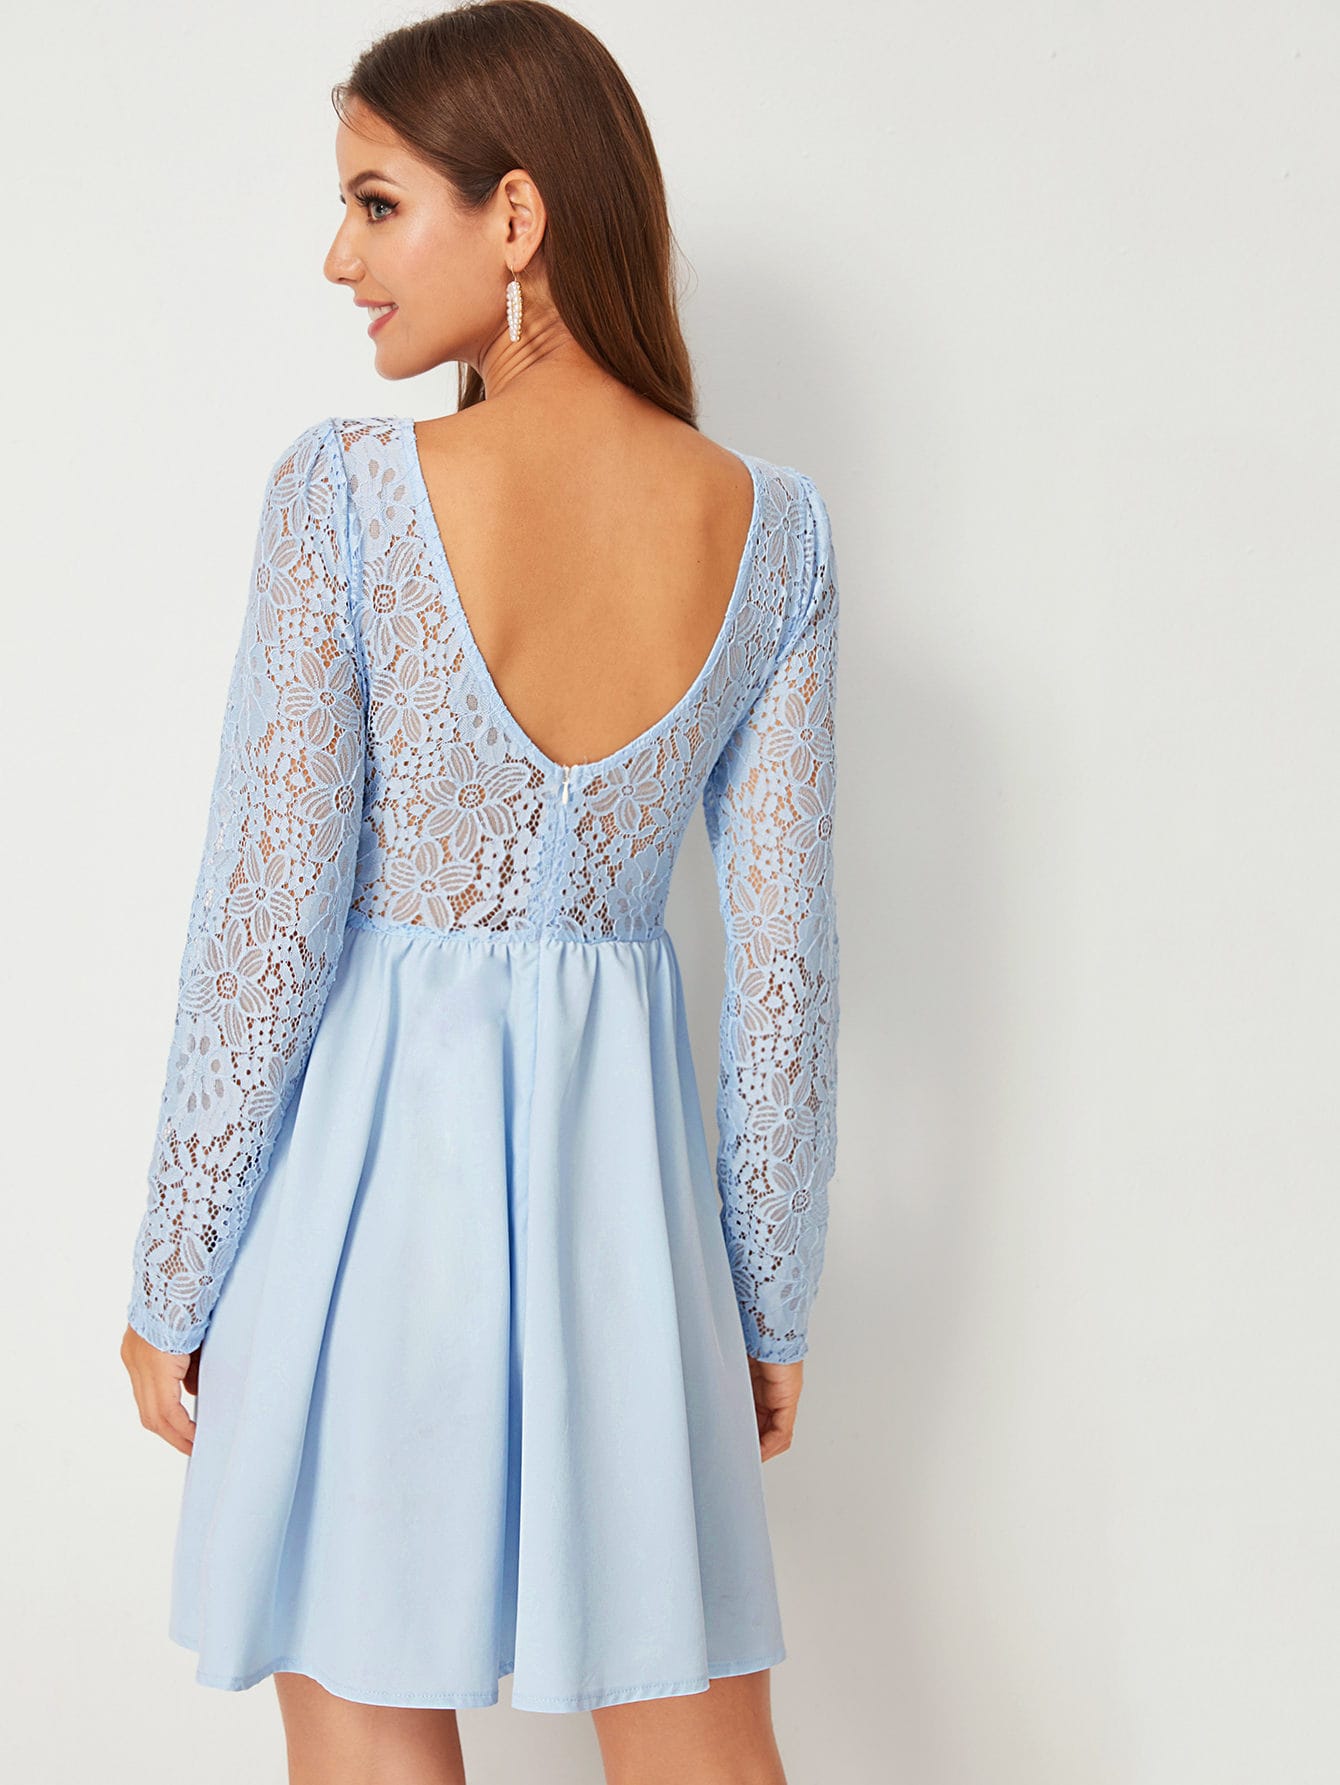 Contrast Lace A-line Dress